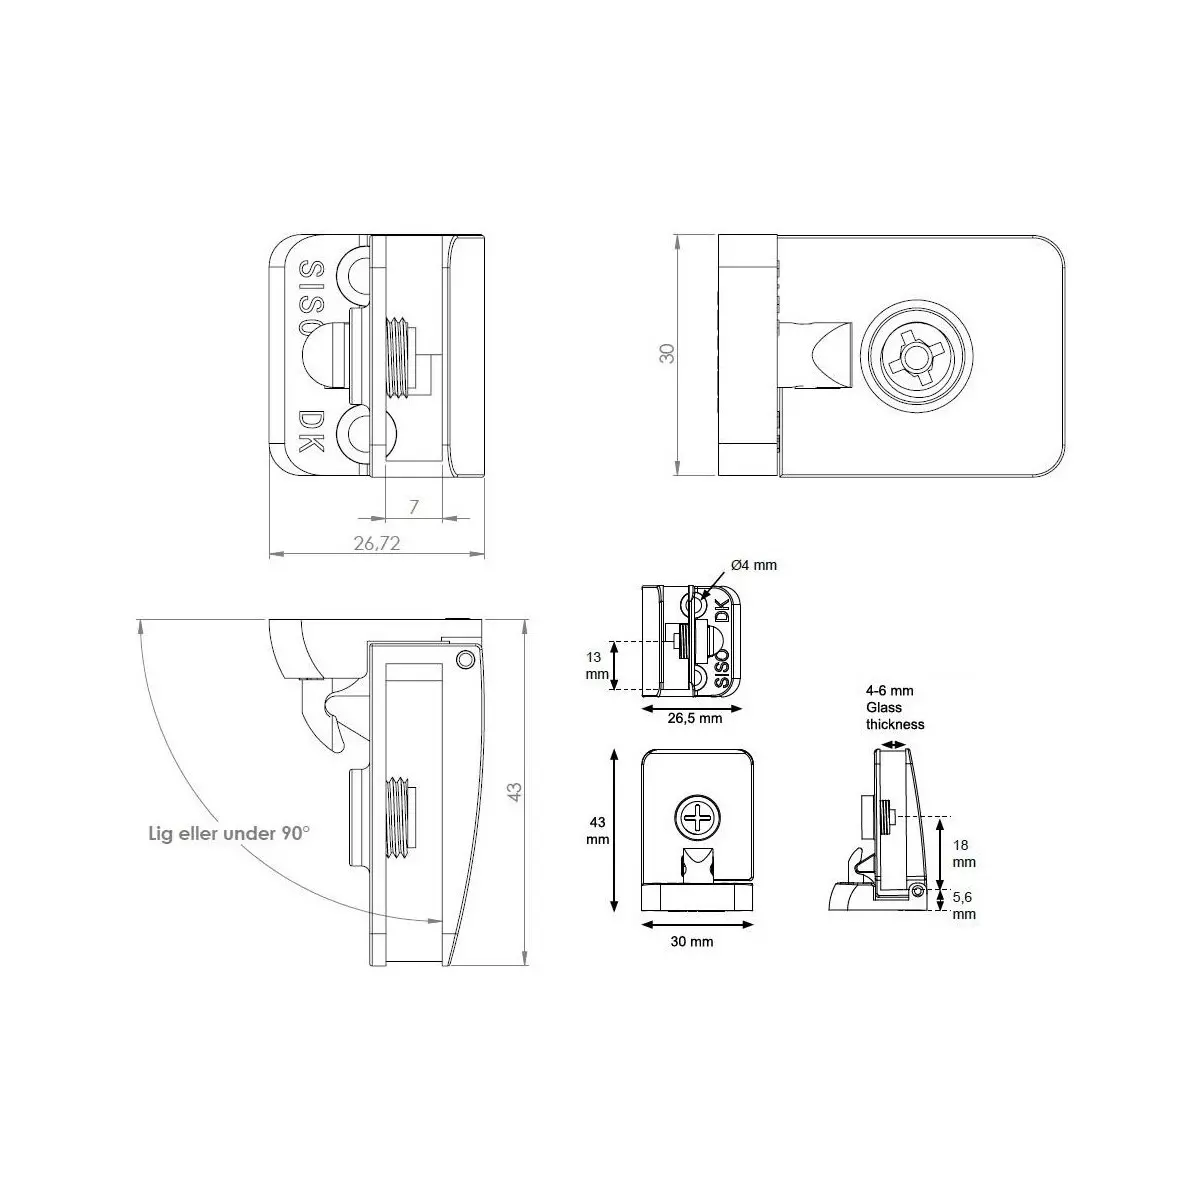 Zawias do drzwi szklanych 4-6mm przelotowy SQUARE krótki prowadnik lewy aluminium